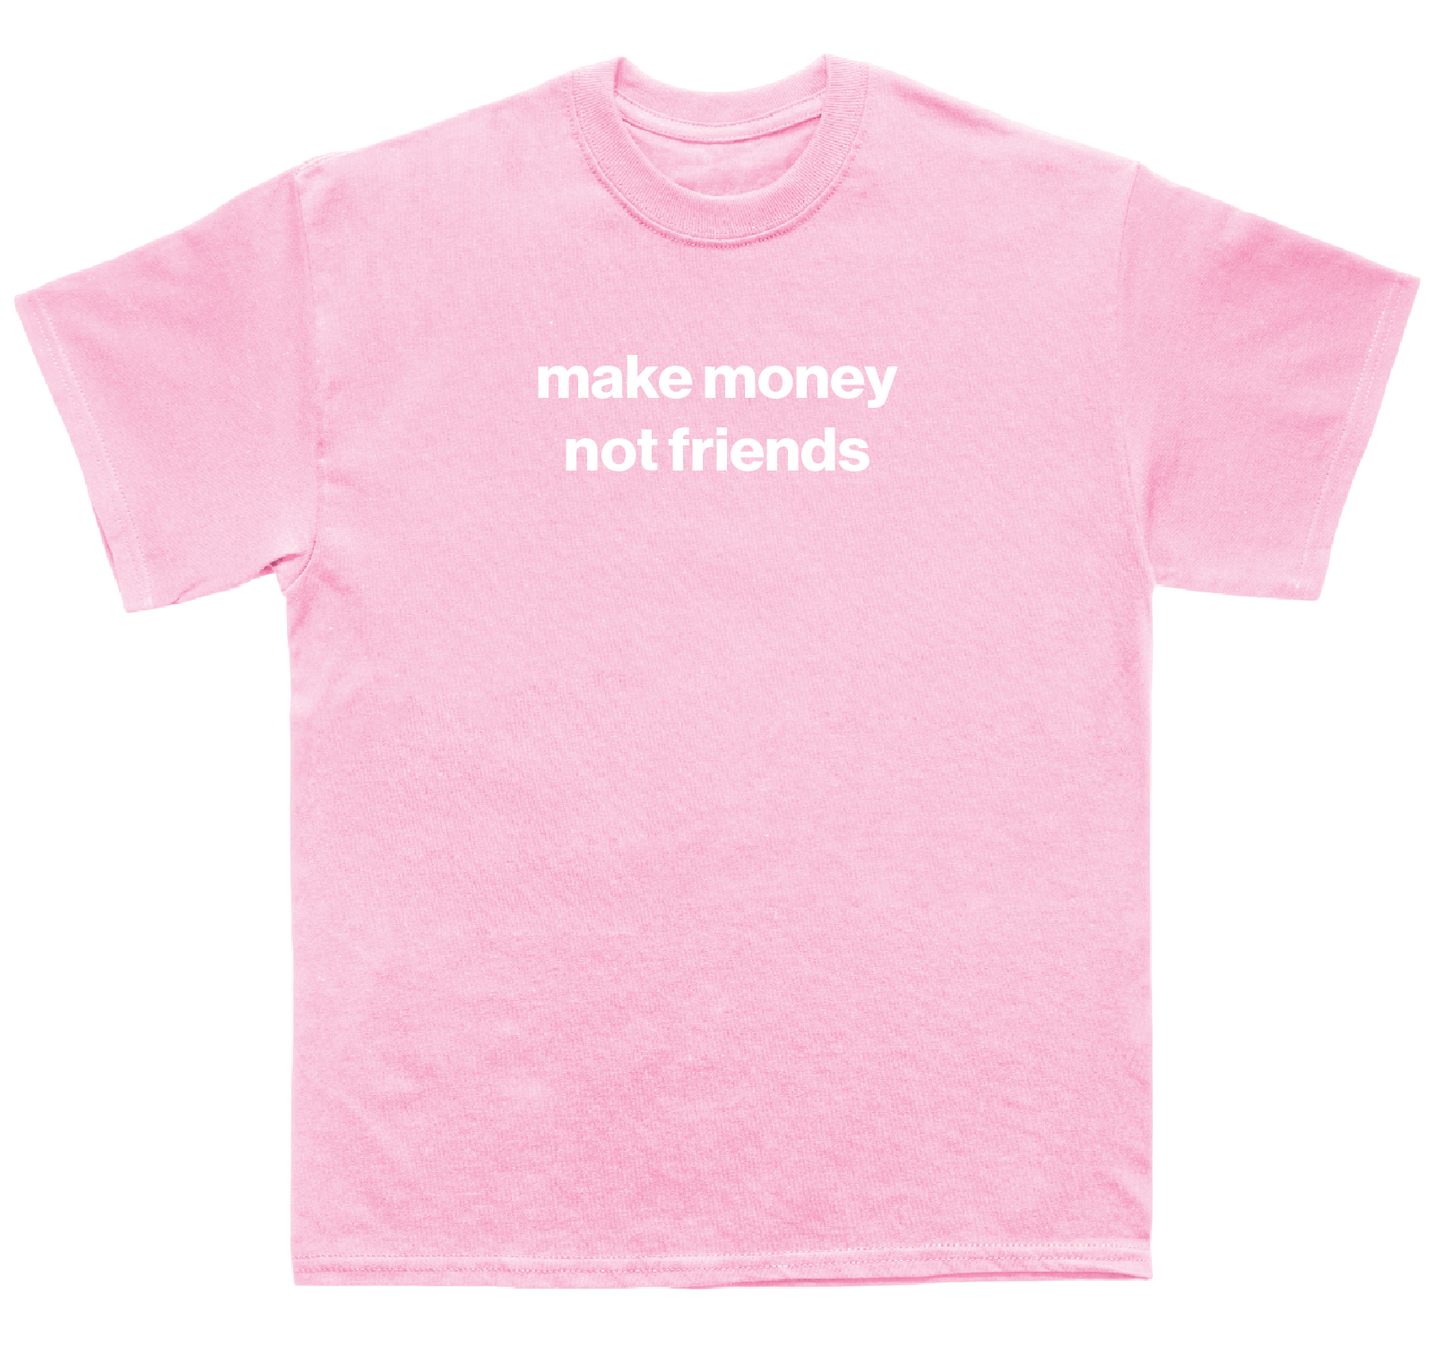 make money not friends shirt